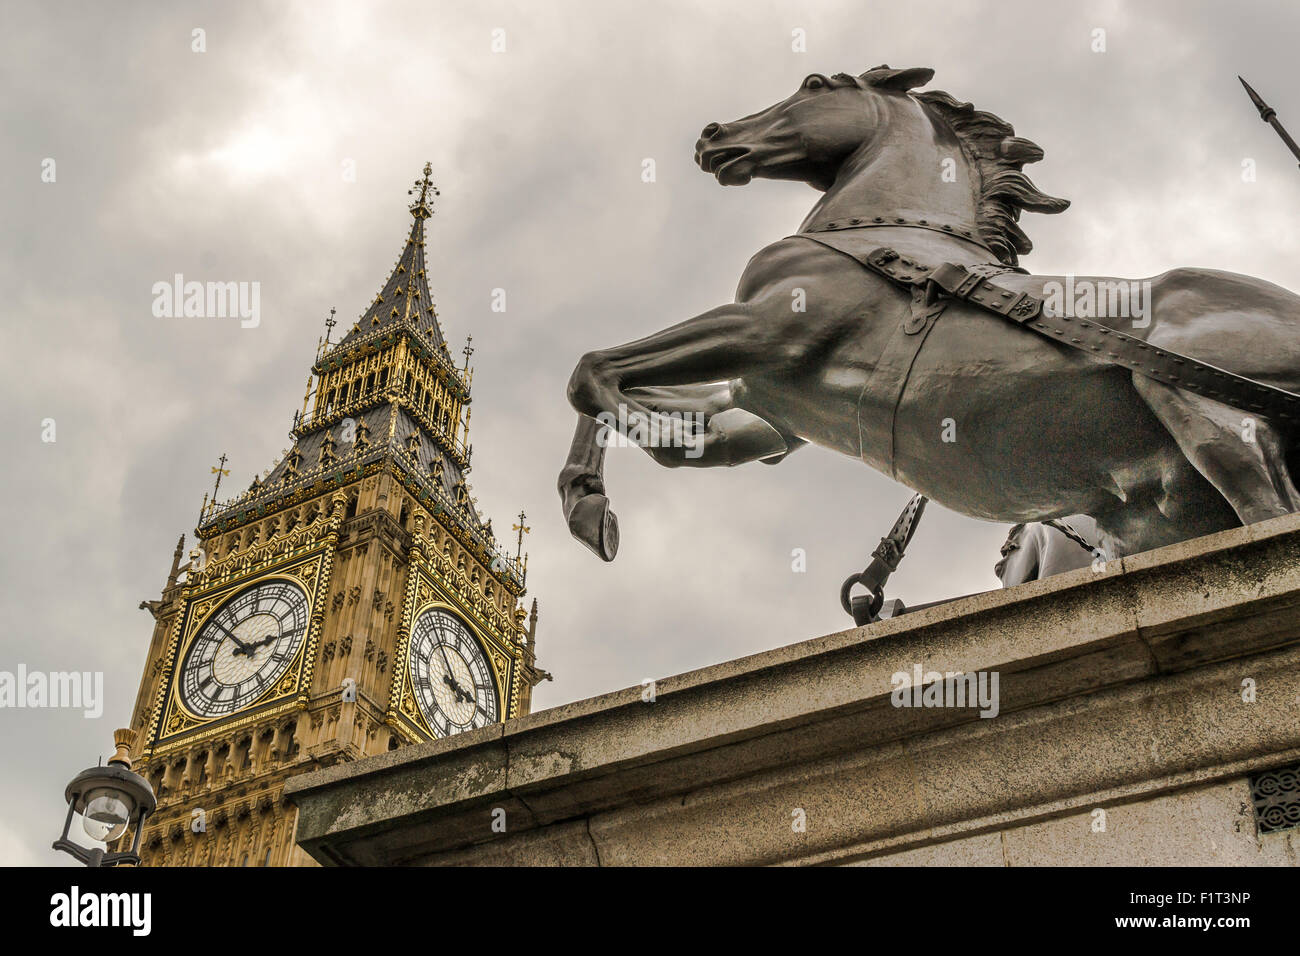 Londra famosa attrazione turistica di Big Ben e Boudicca statua sul Tamigi Foto Stock